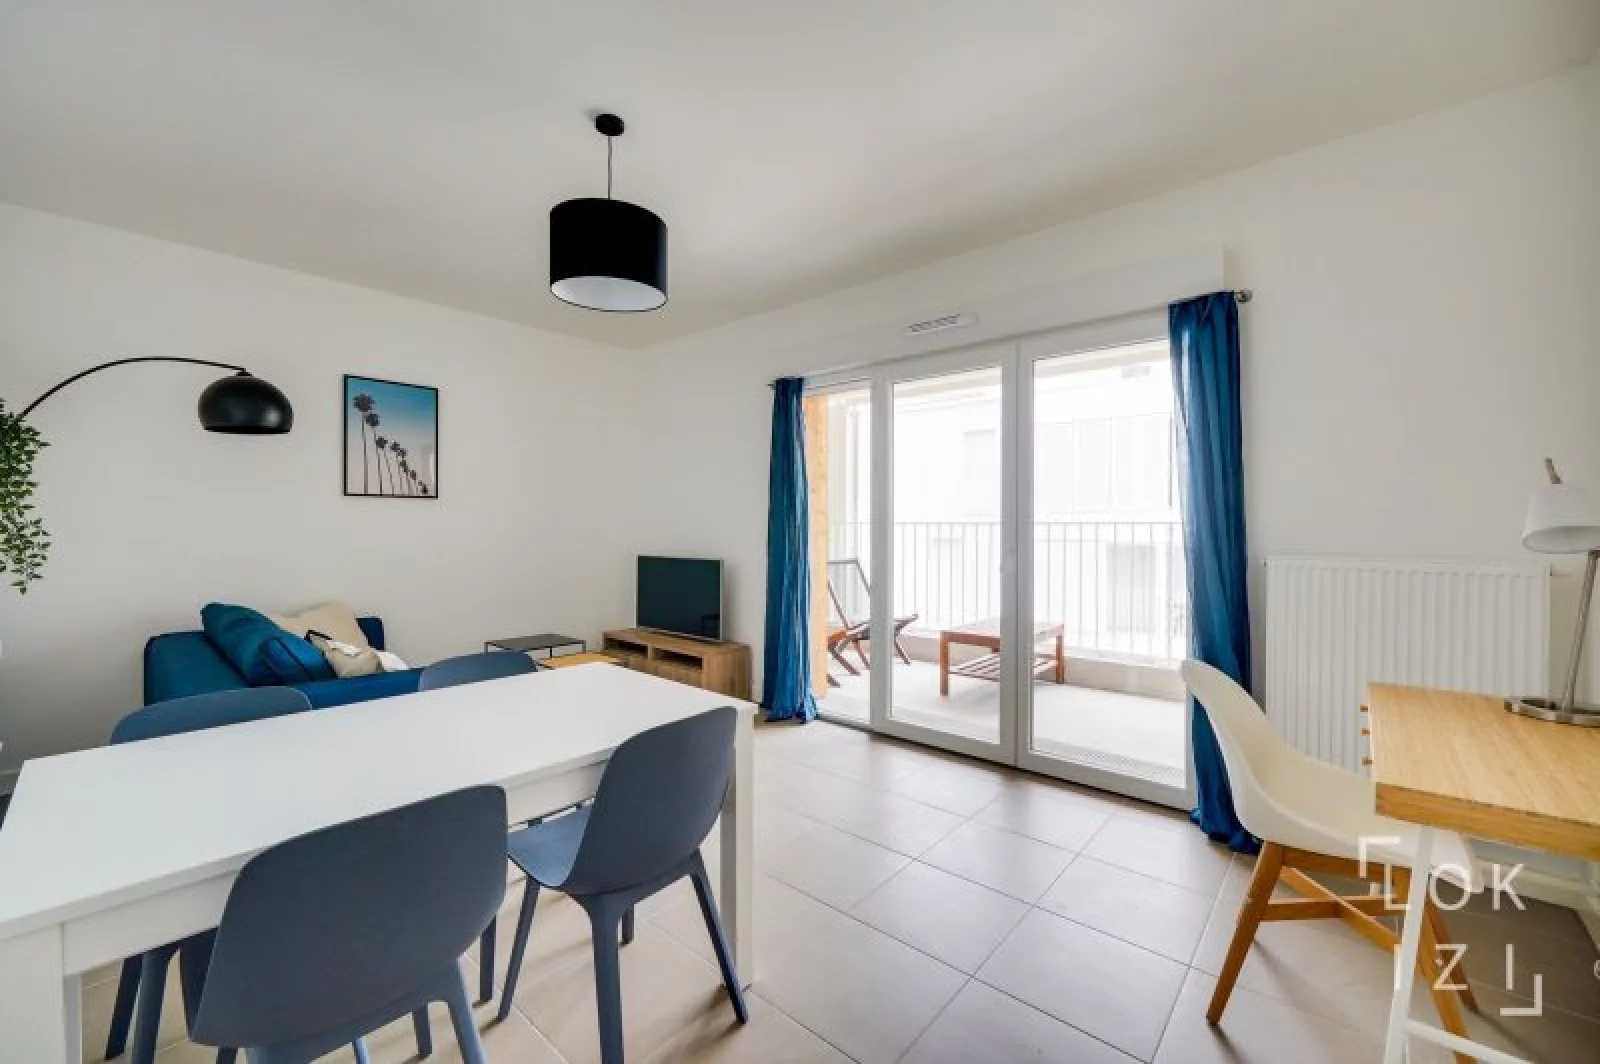 Location appartement meublé 2 pièces 44m²  (Bordeaux- Bacalan)